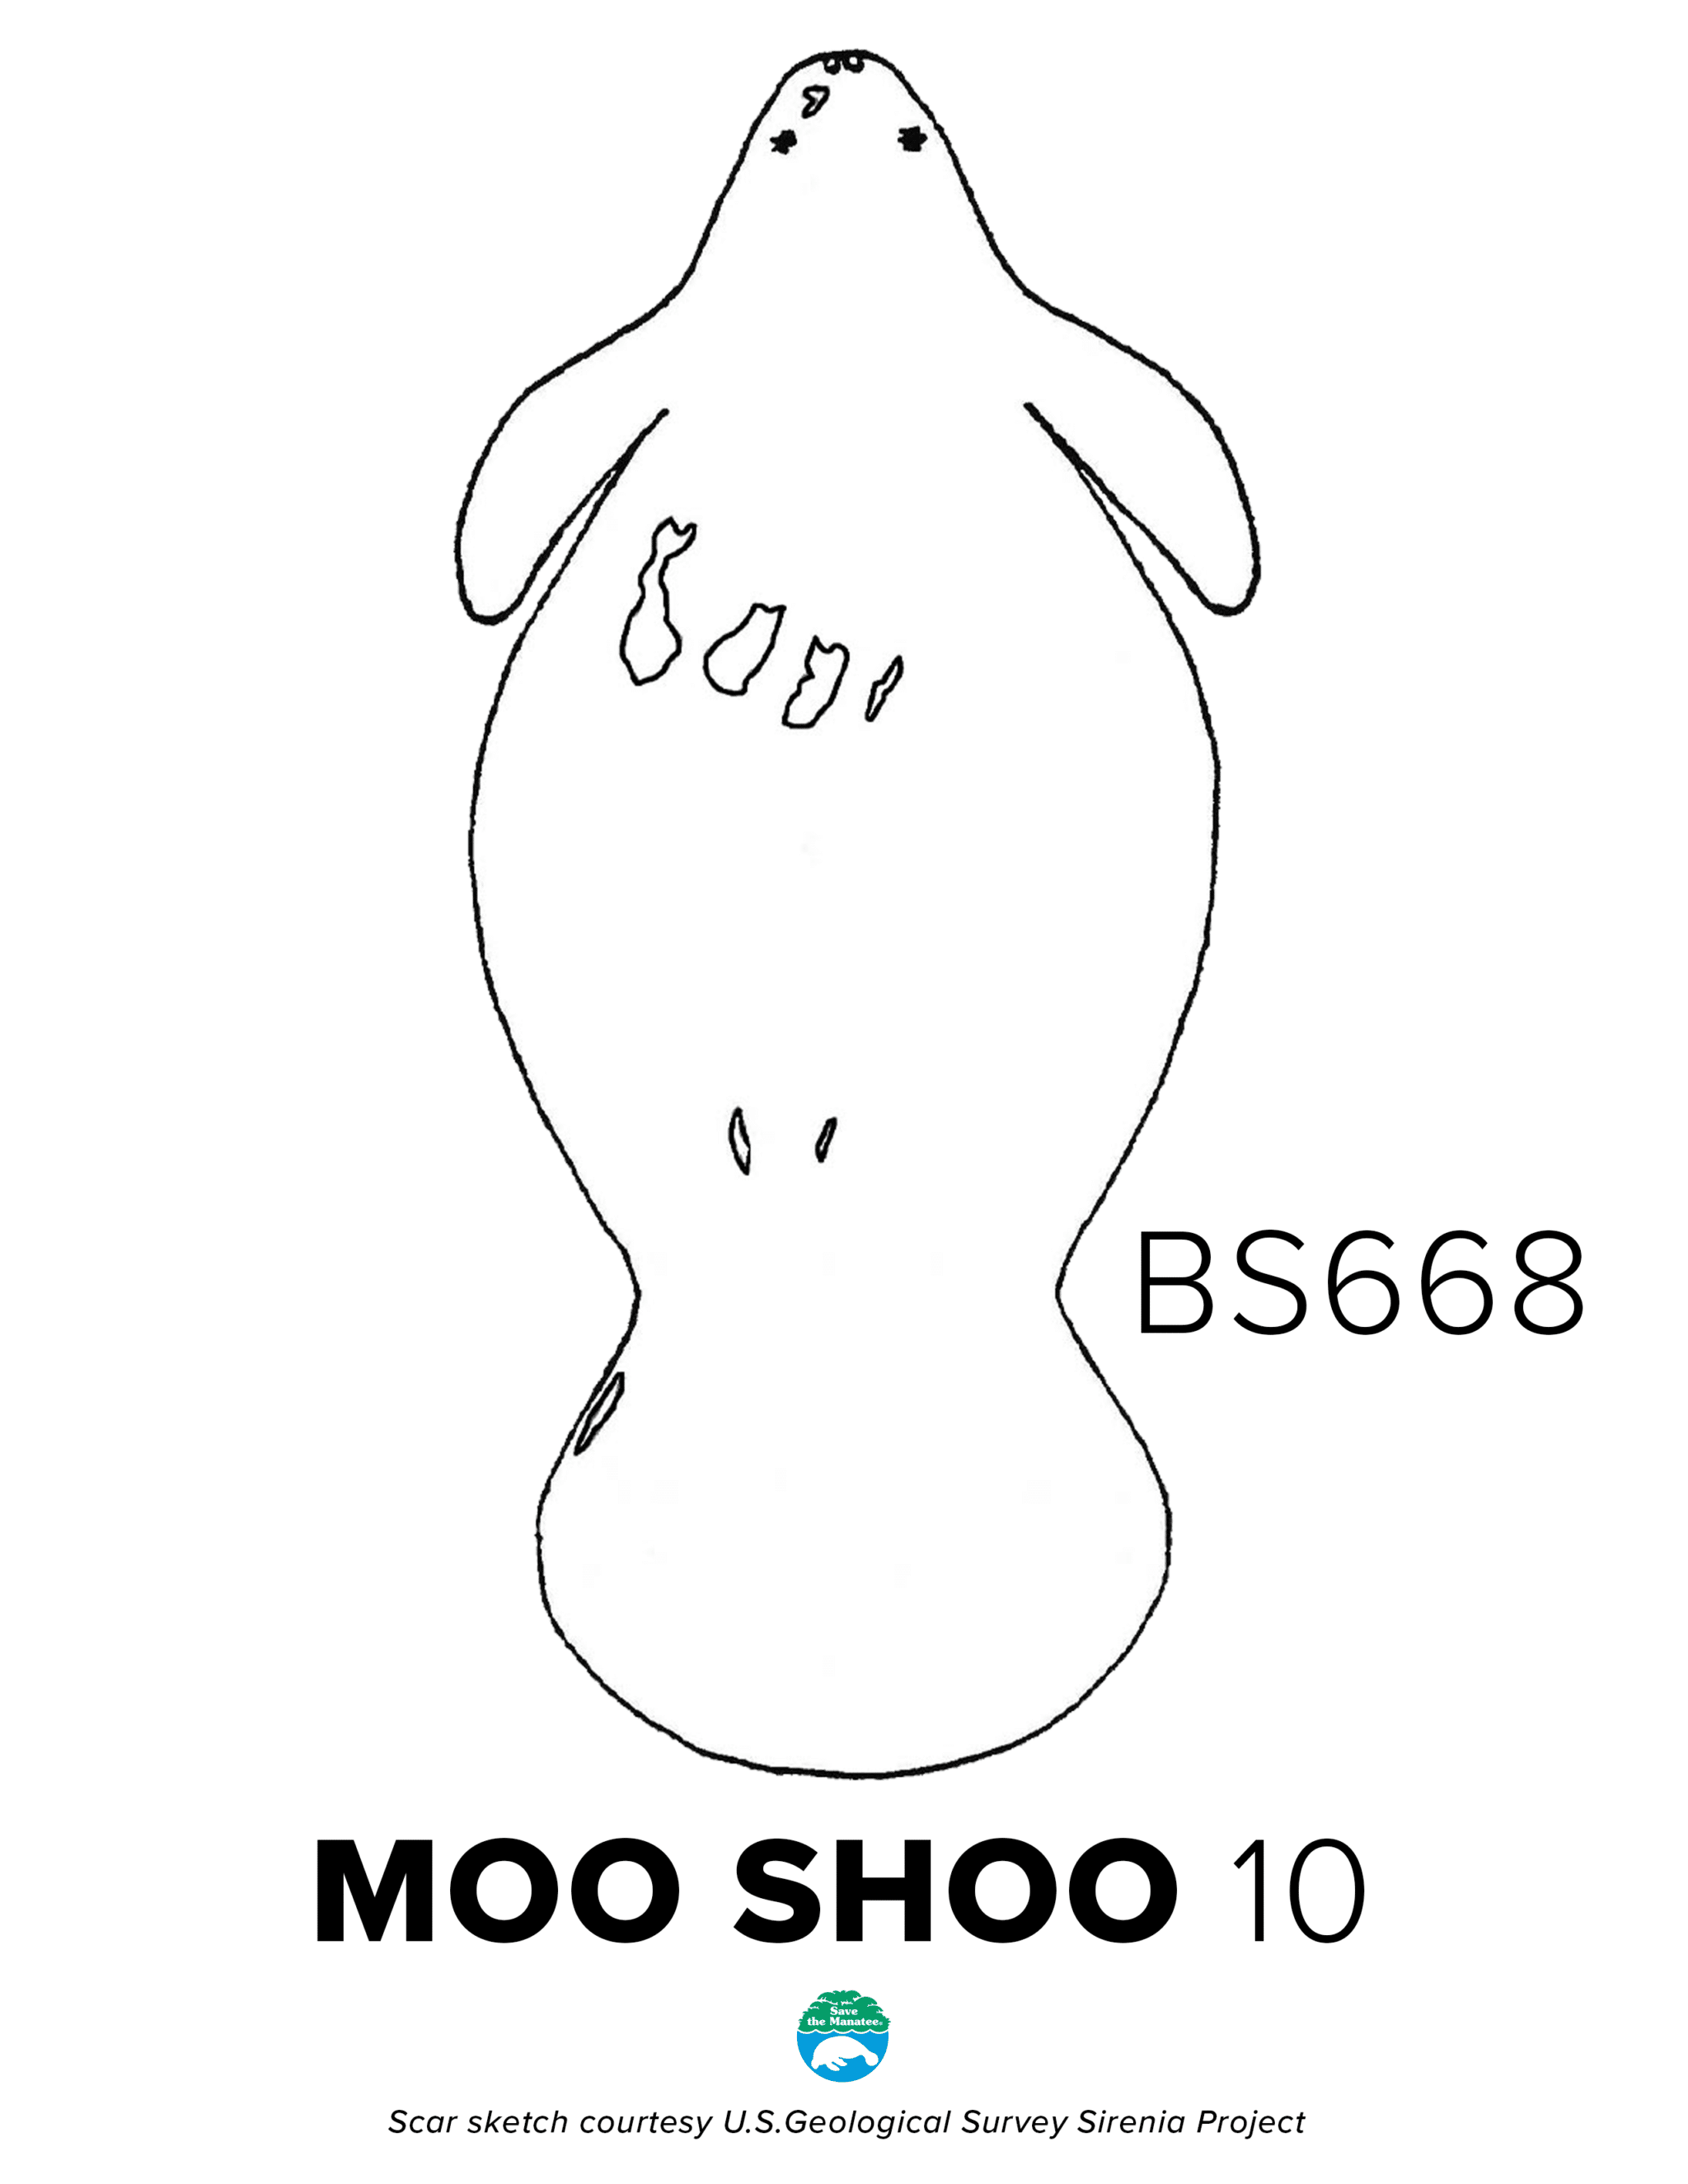 BS669 MooShoo Scar